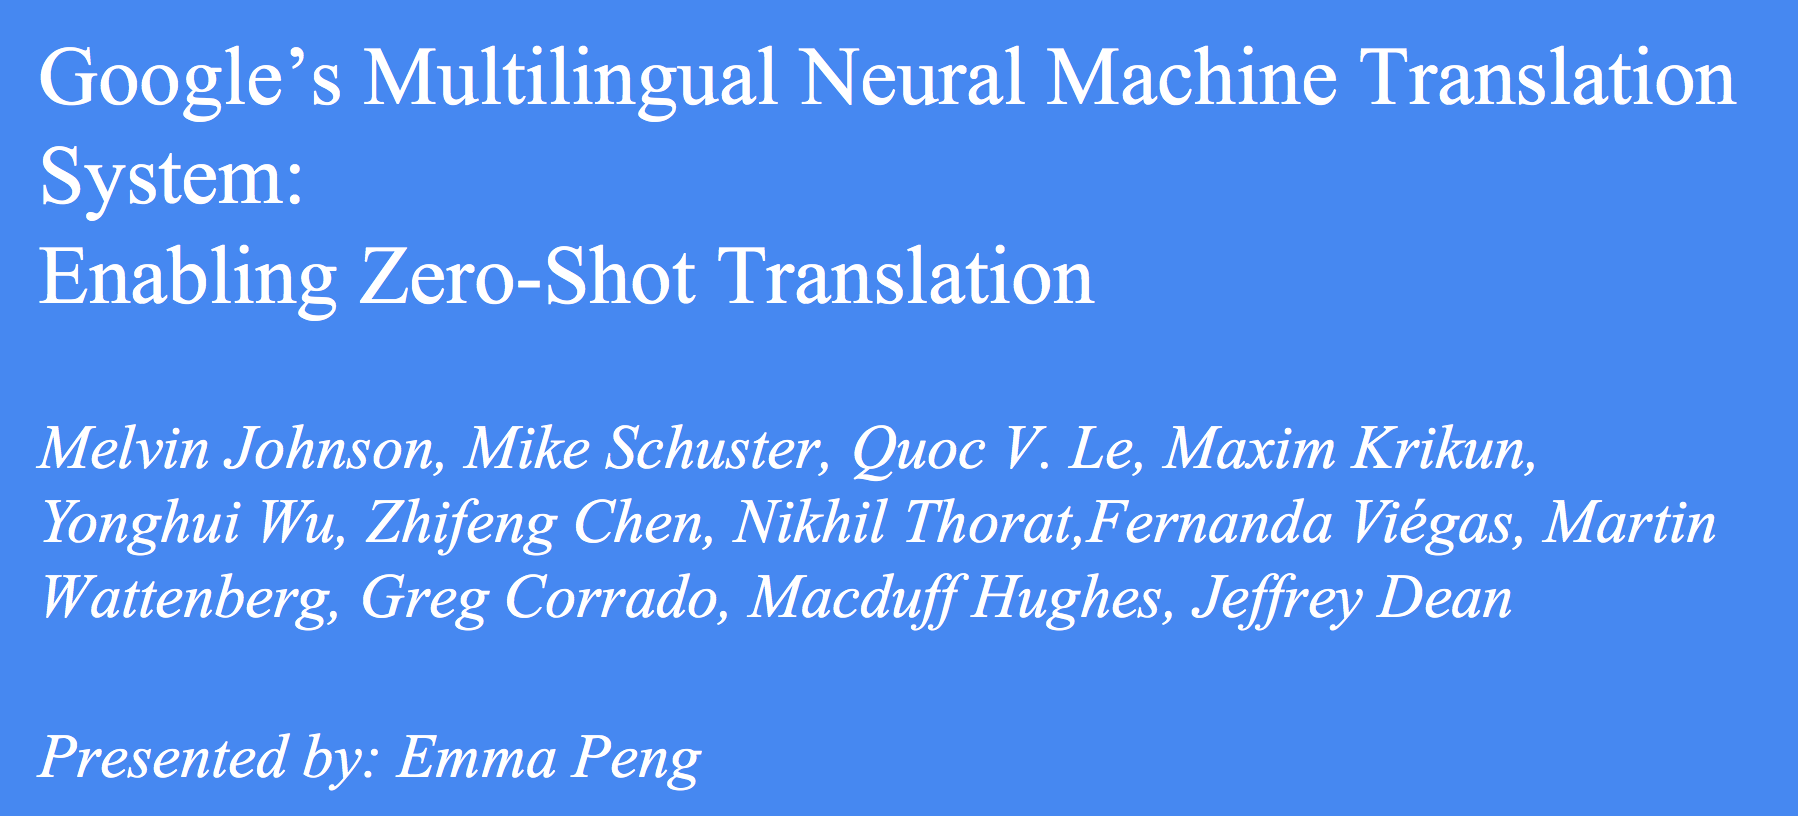 CS224n研究热点8 谷歌的多语种神经网络翻译系统